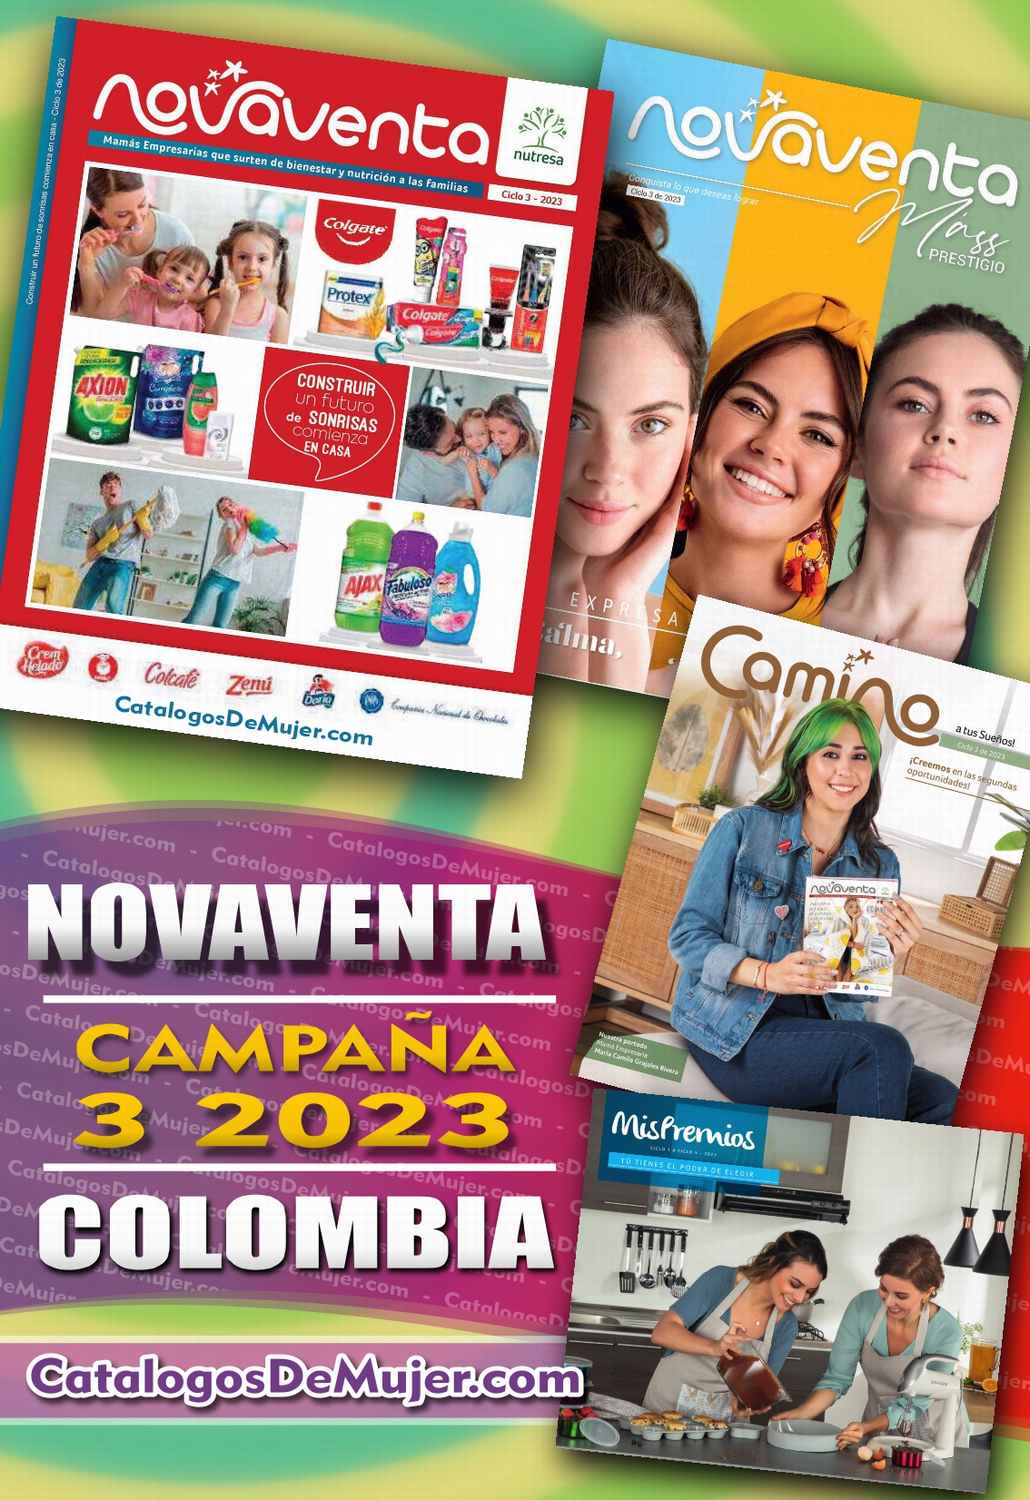 Catalogo Novaventa Campaña 3 2023 Colombia